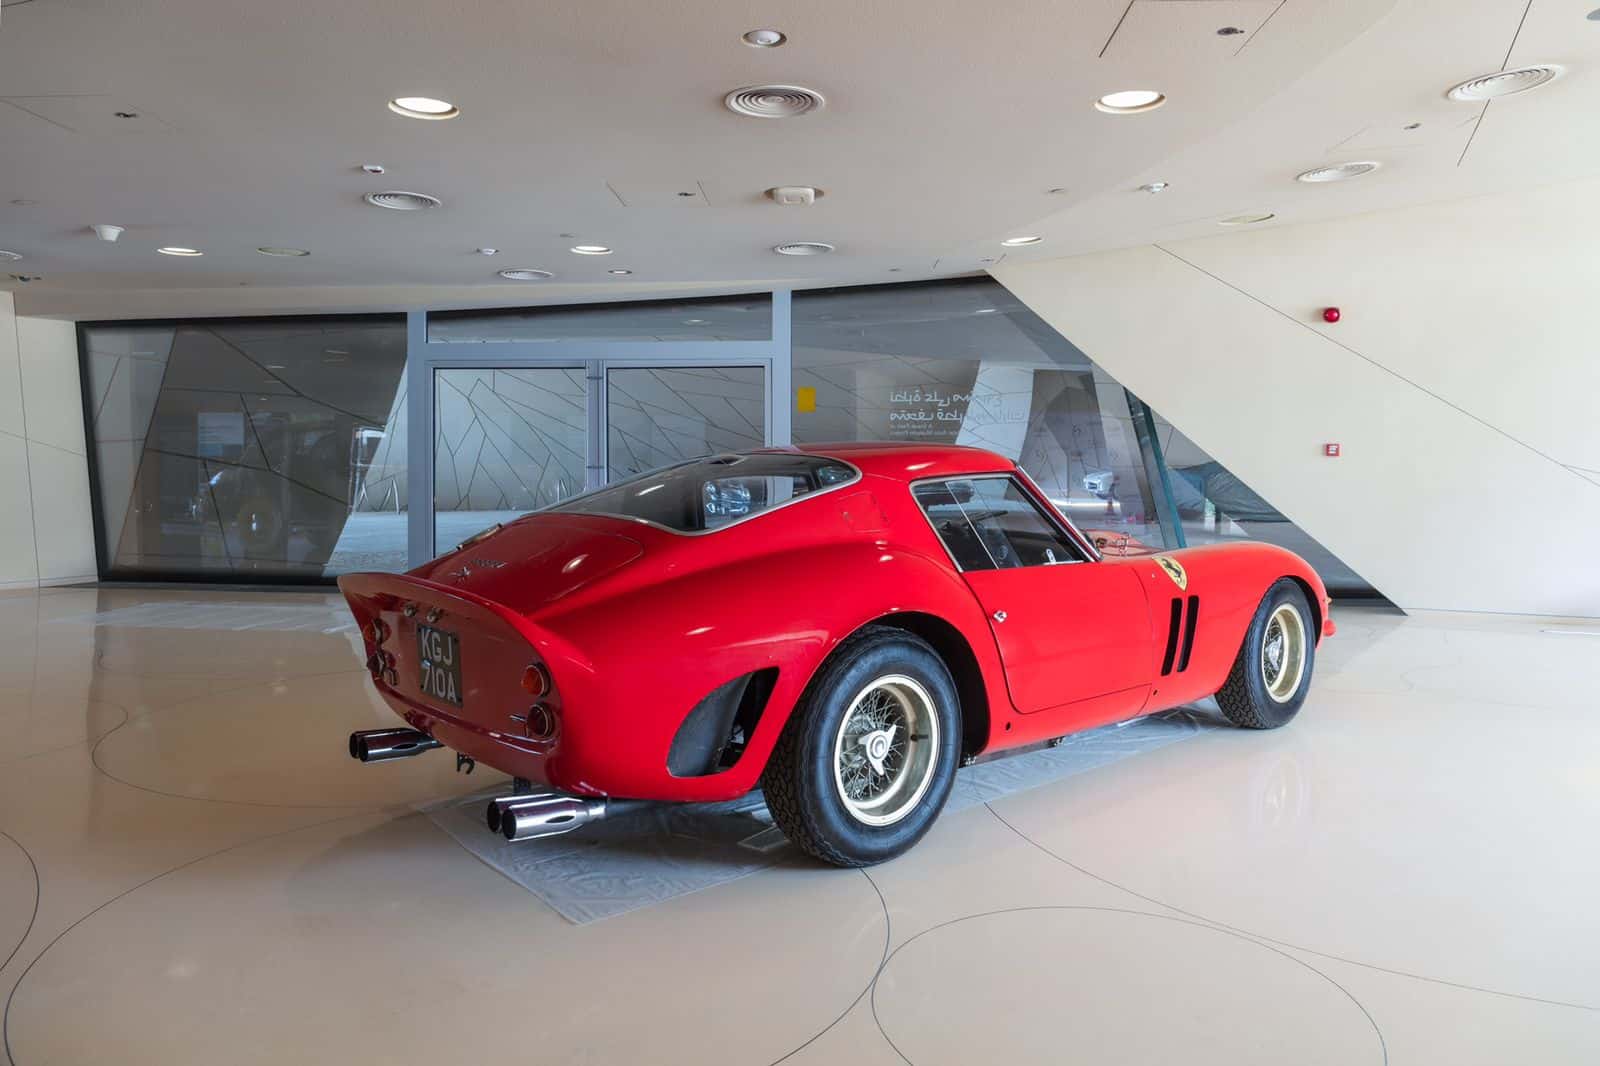 متاحف قطر تُعلن عن التصاميم الأولية لمتحف قطر للسيارات ، وتفتتح معرضًا للسيارات بمتحف قطر الوطني